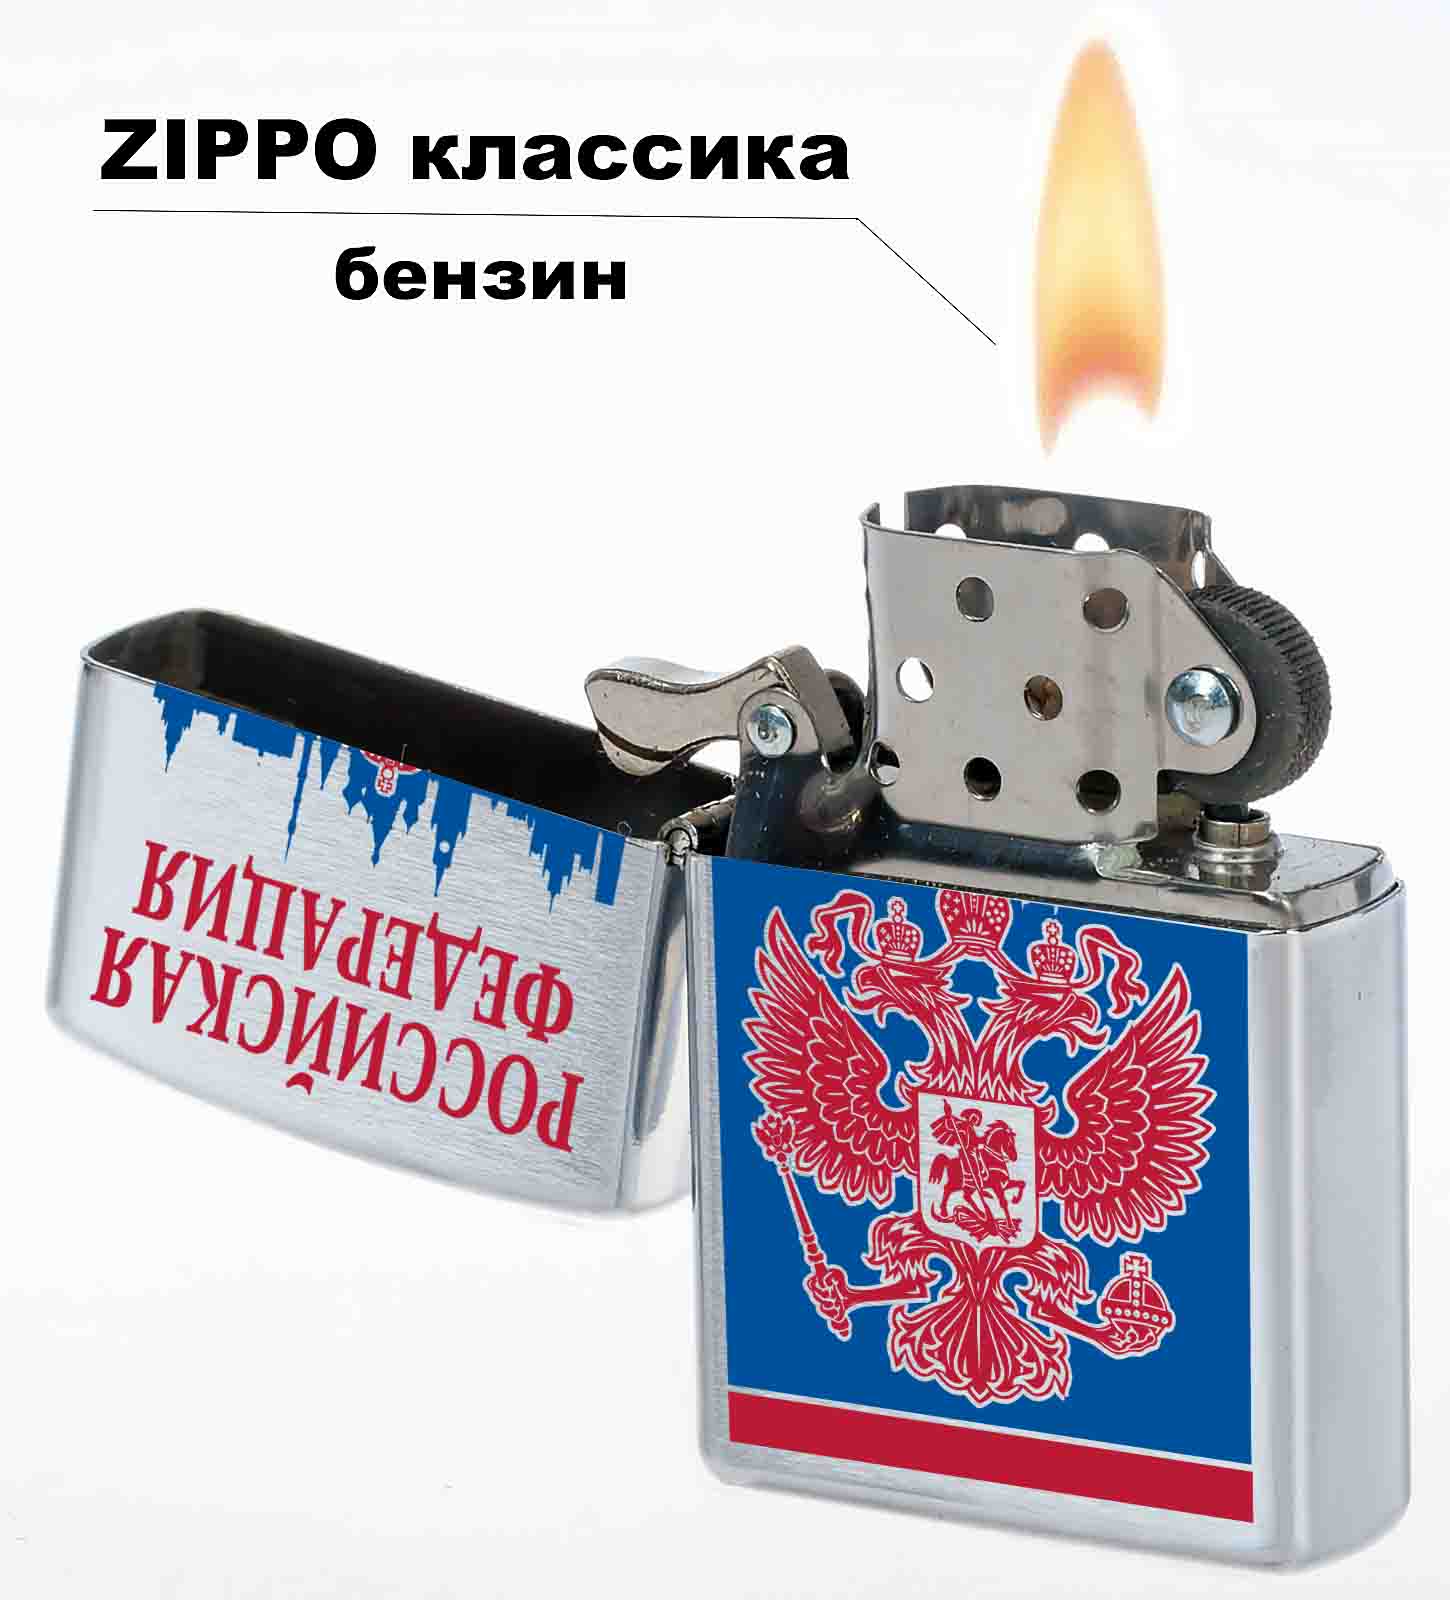 Купить зажигалку с гербом РФ недорого